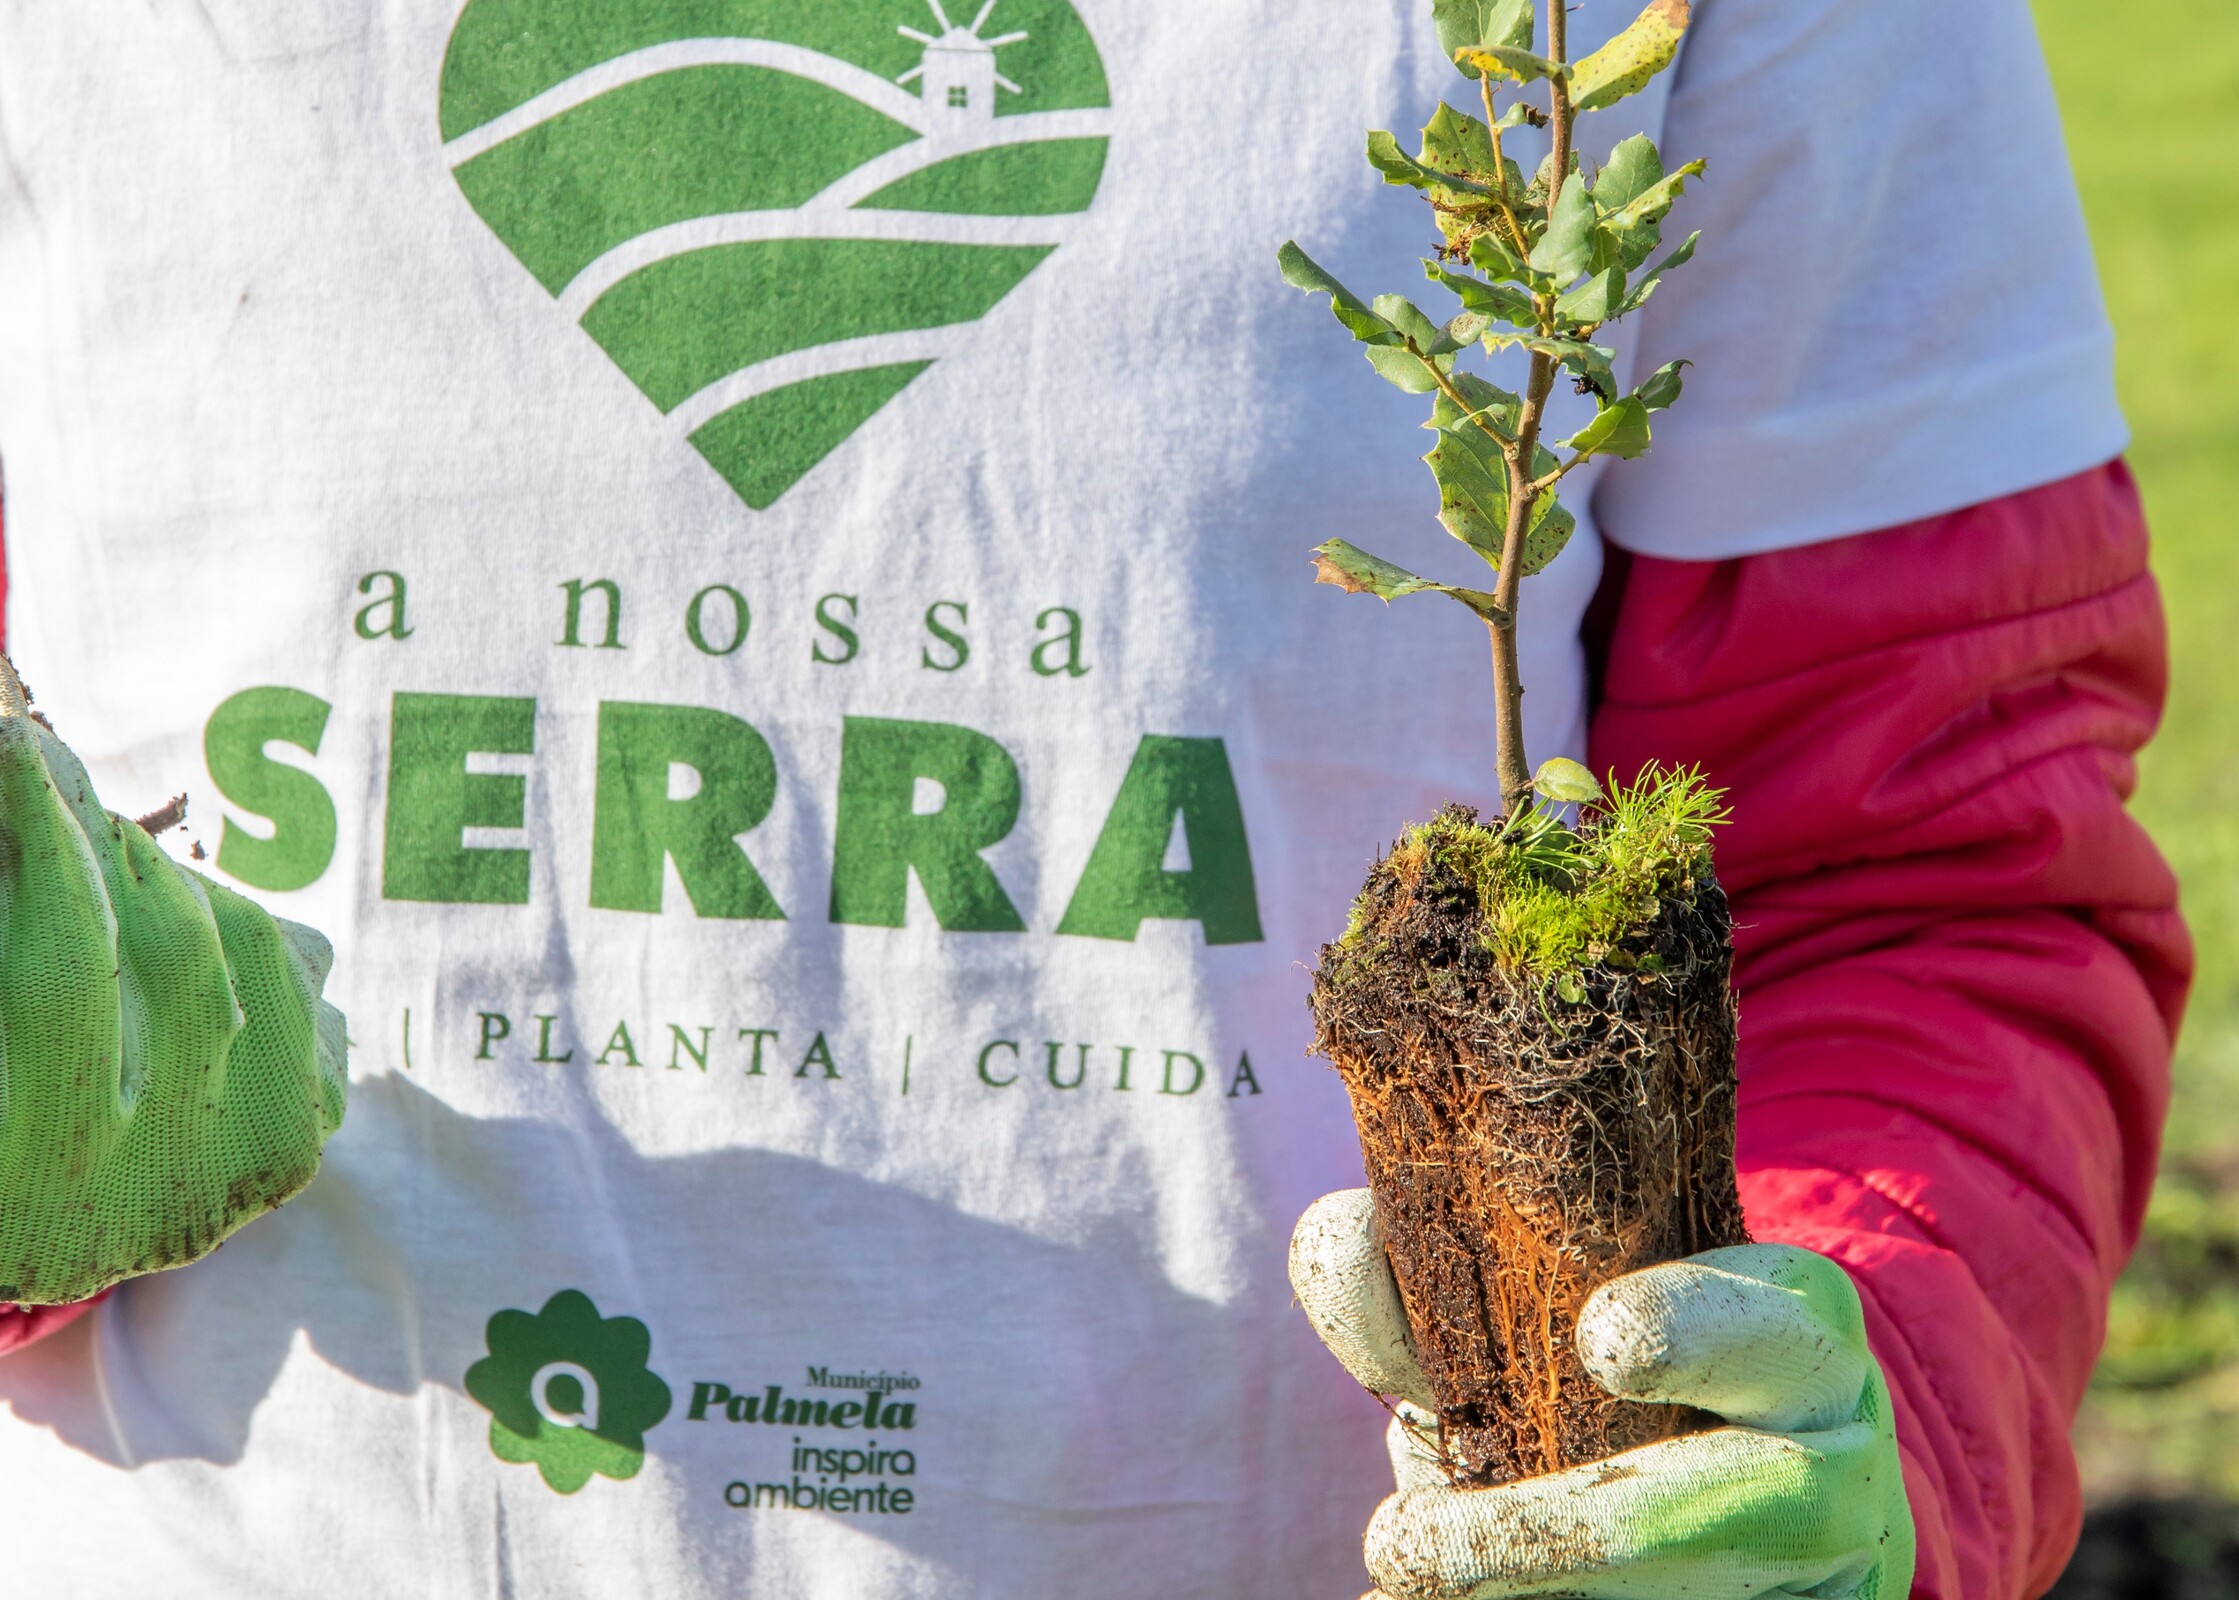 Reflorestação uniu comunidade no amor à “nossa serra” – veja o vídeo aqui!